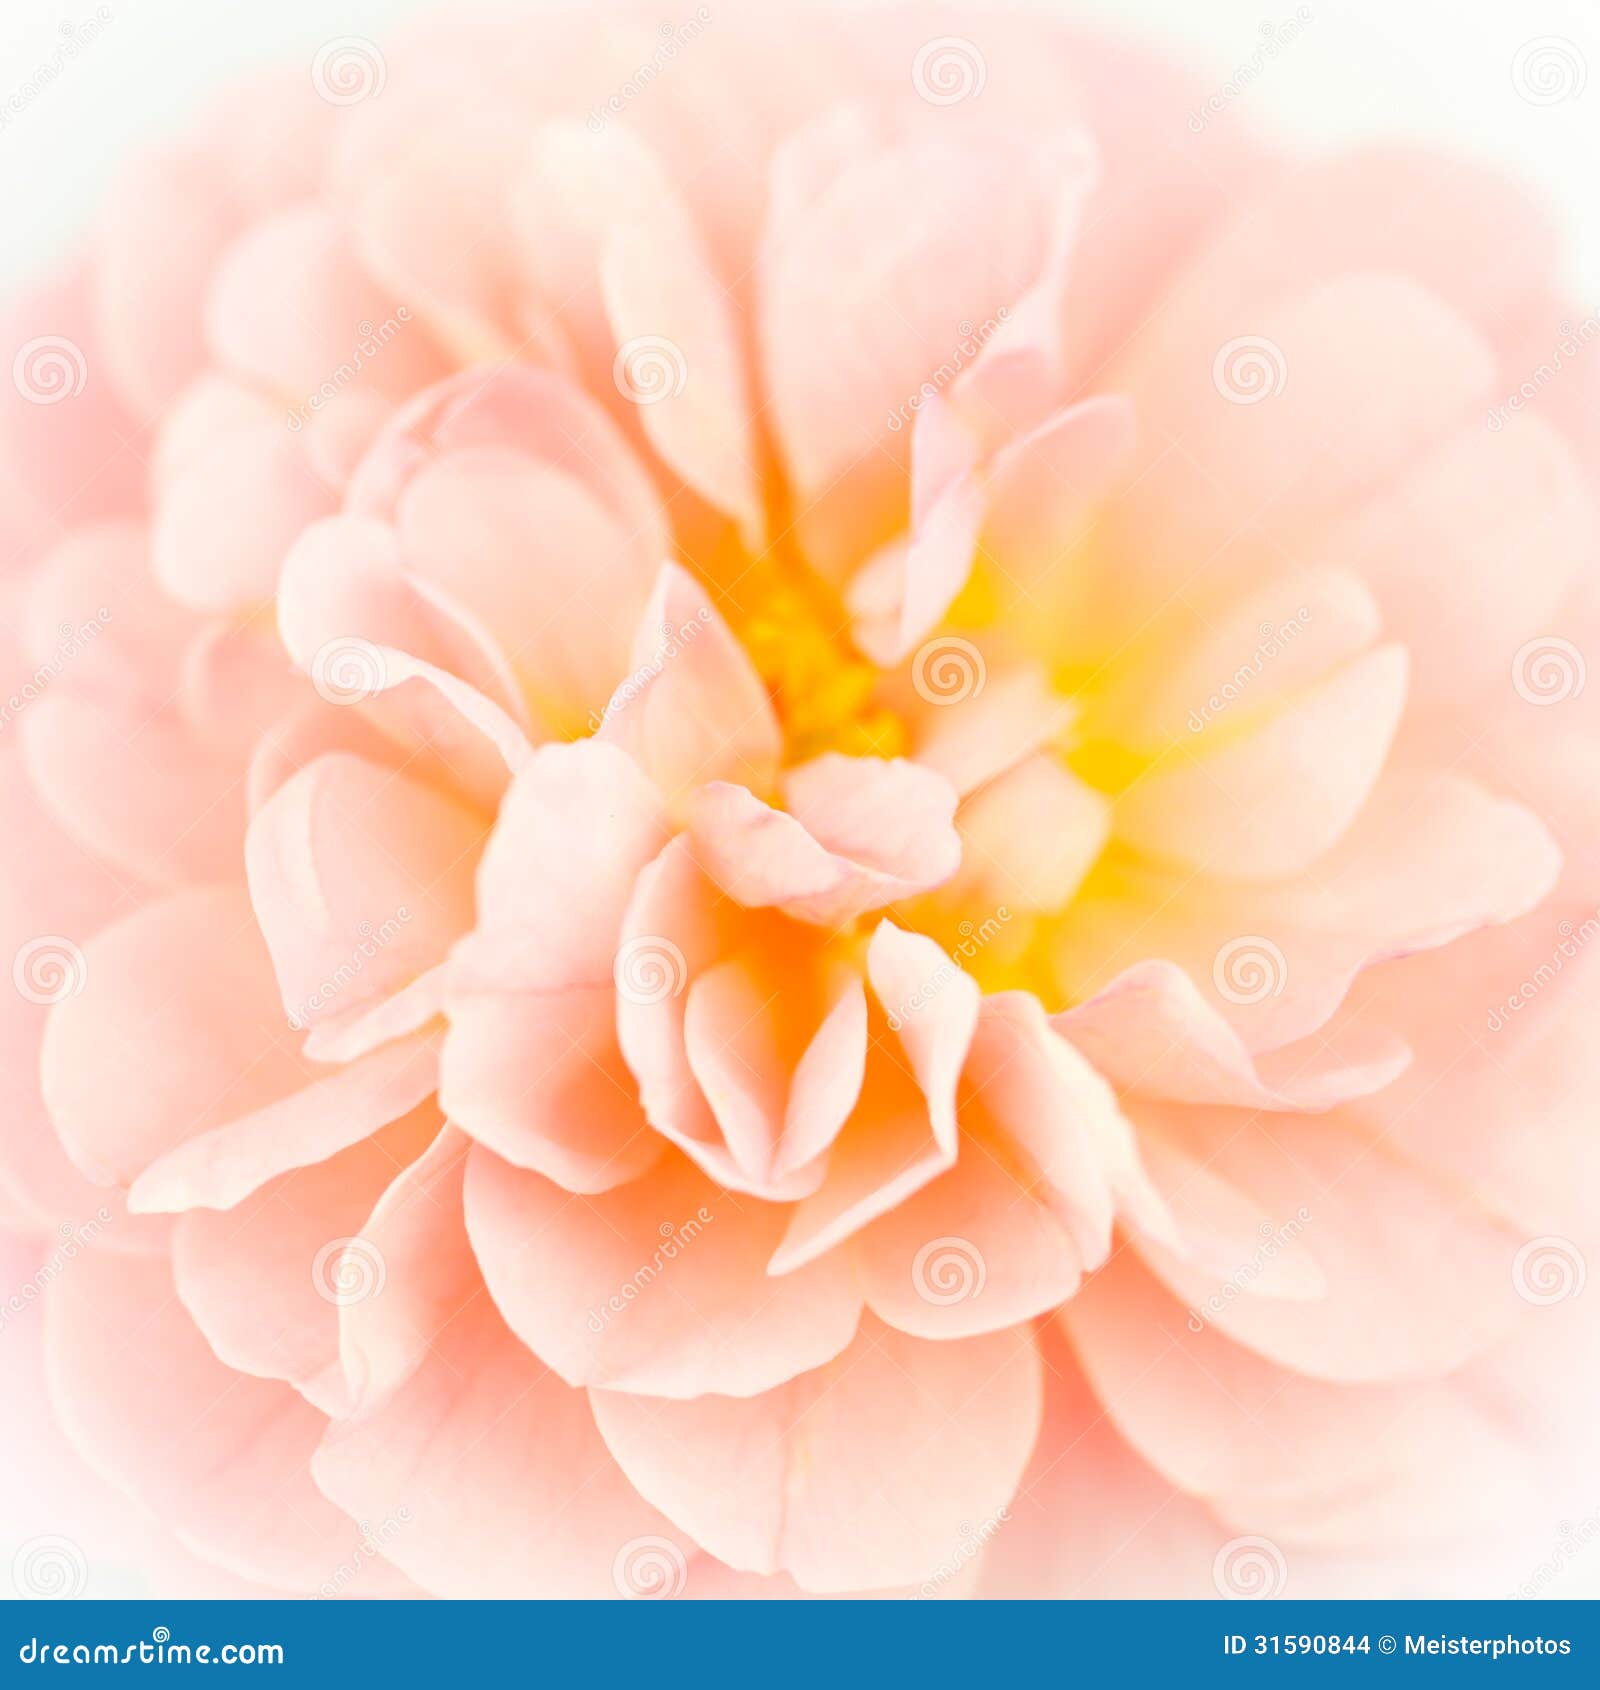 Pink Rose Closeup Stock Images Image 31590844